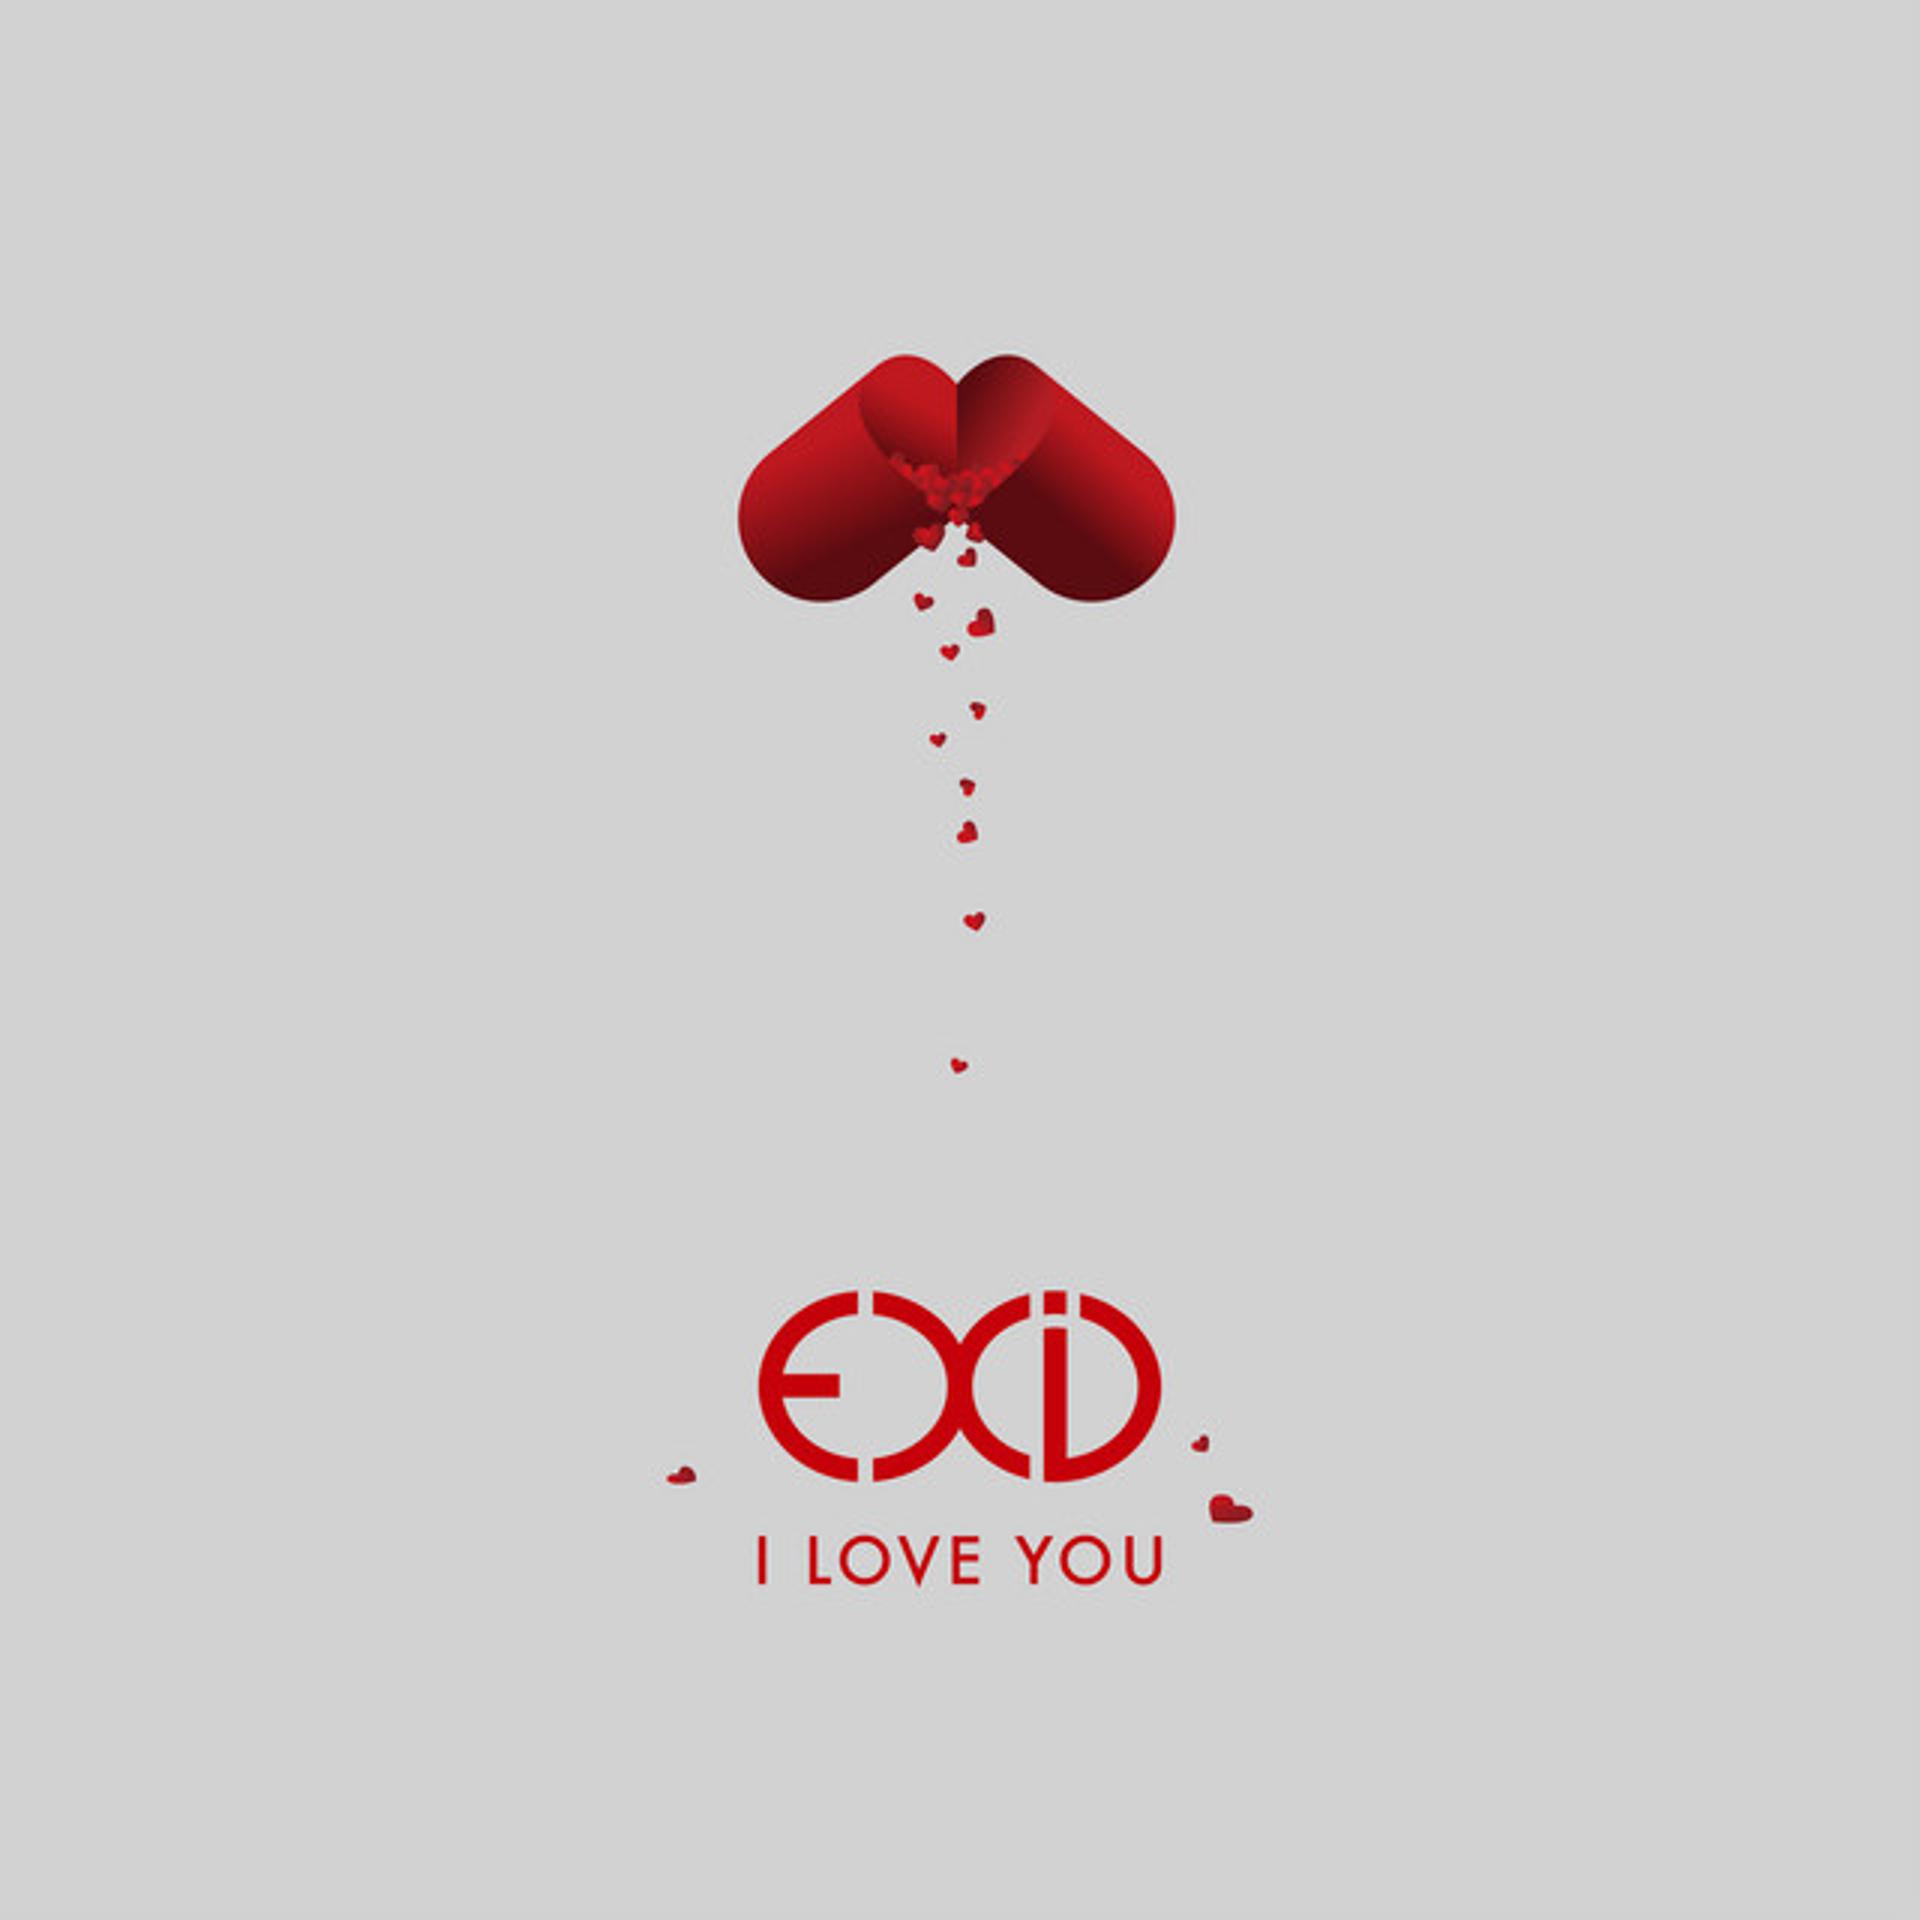 I Love you. EXID I Love you. EXID iloveyou. I Love обложка. Ууу лове